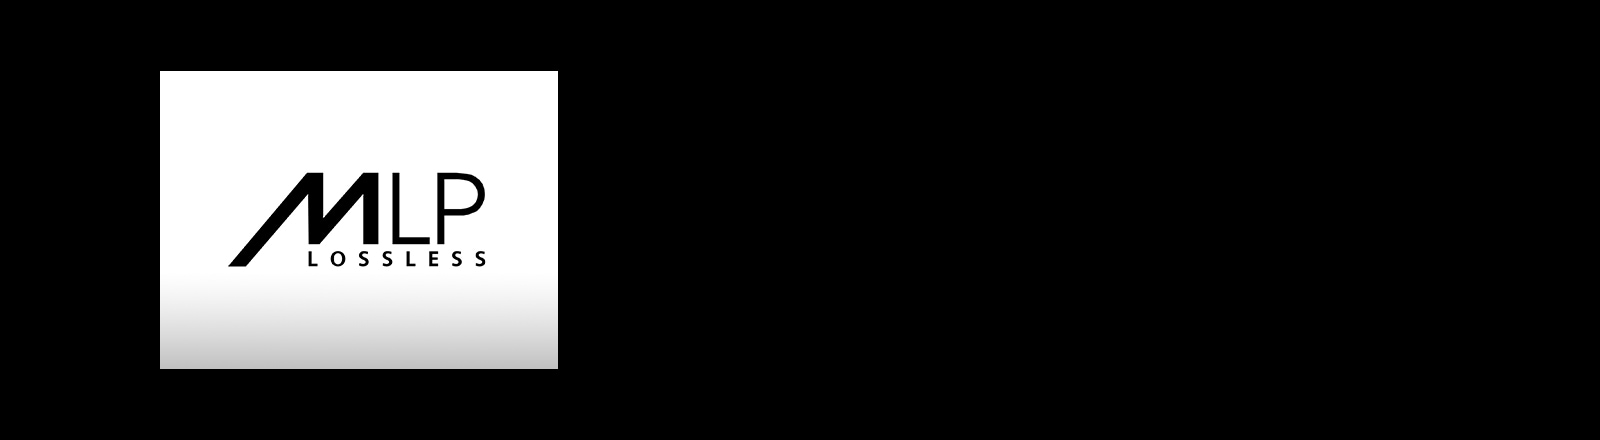 Slika logotipa „MLP”